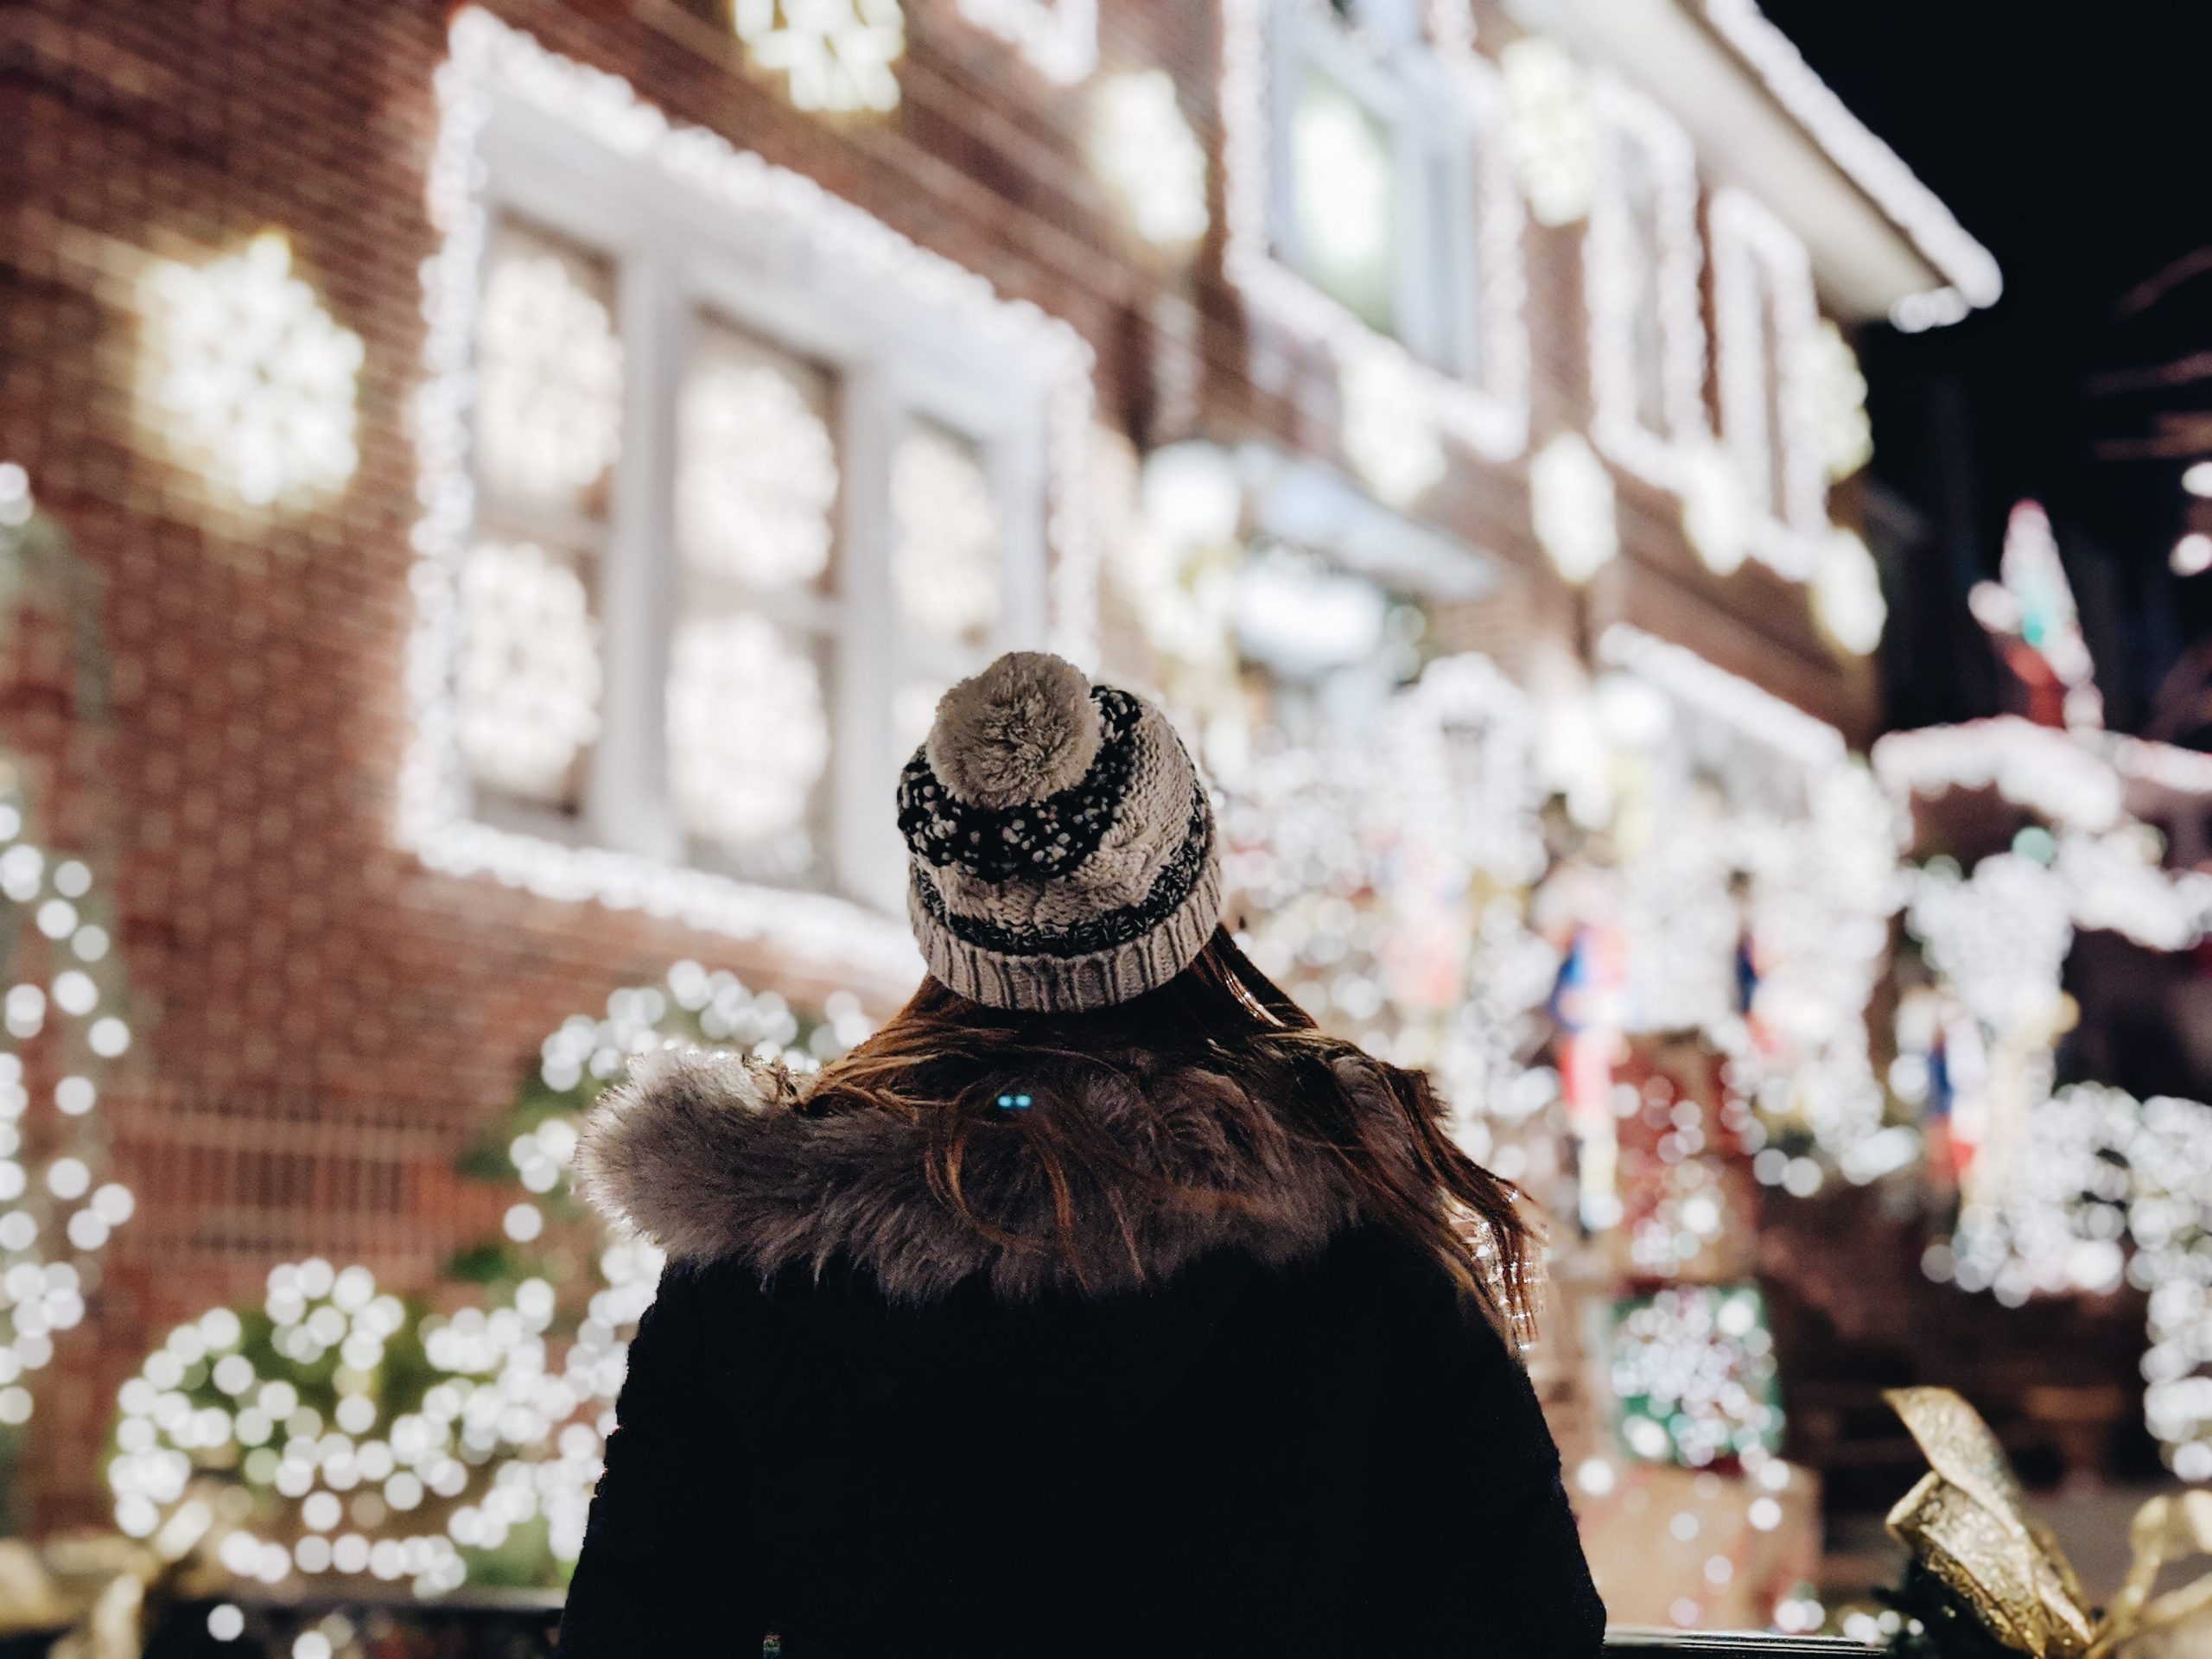 Natal em Nova York – Luzes e decoração de Natal das casas em Dyker Heights  – Juliana Malta